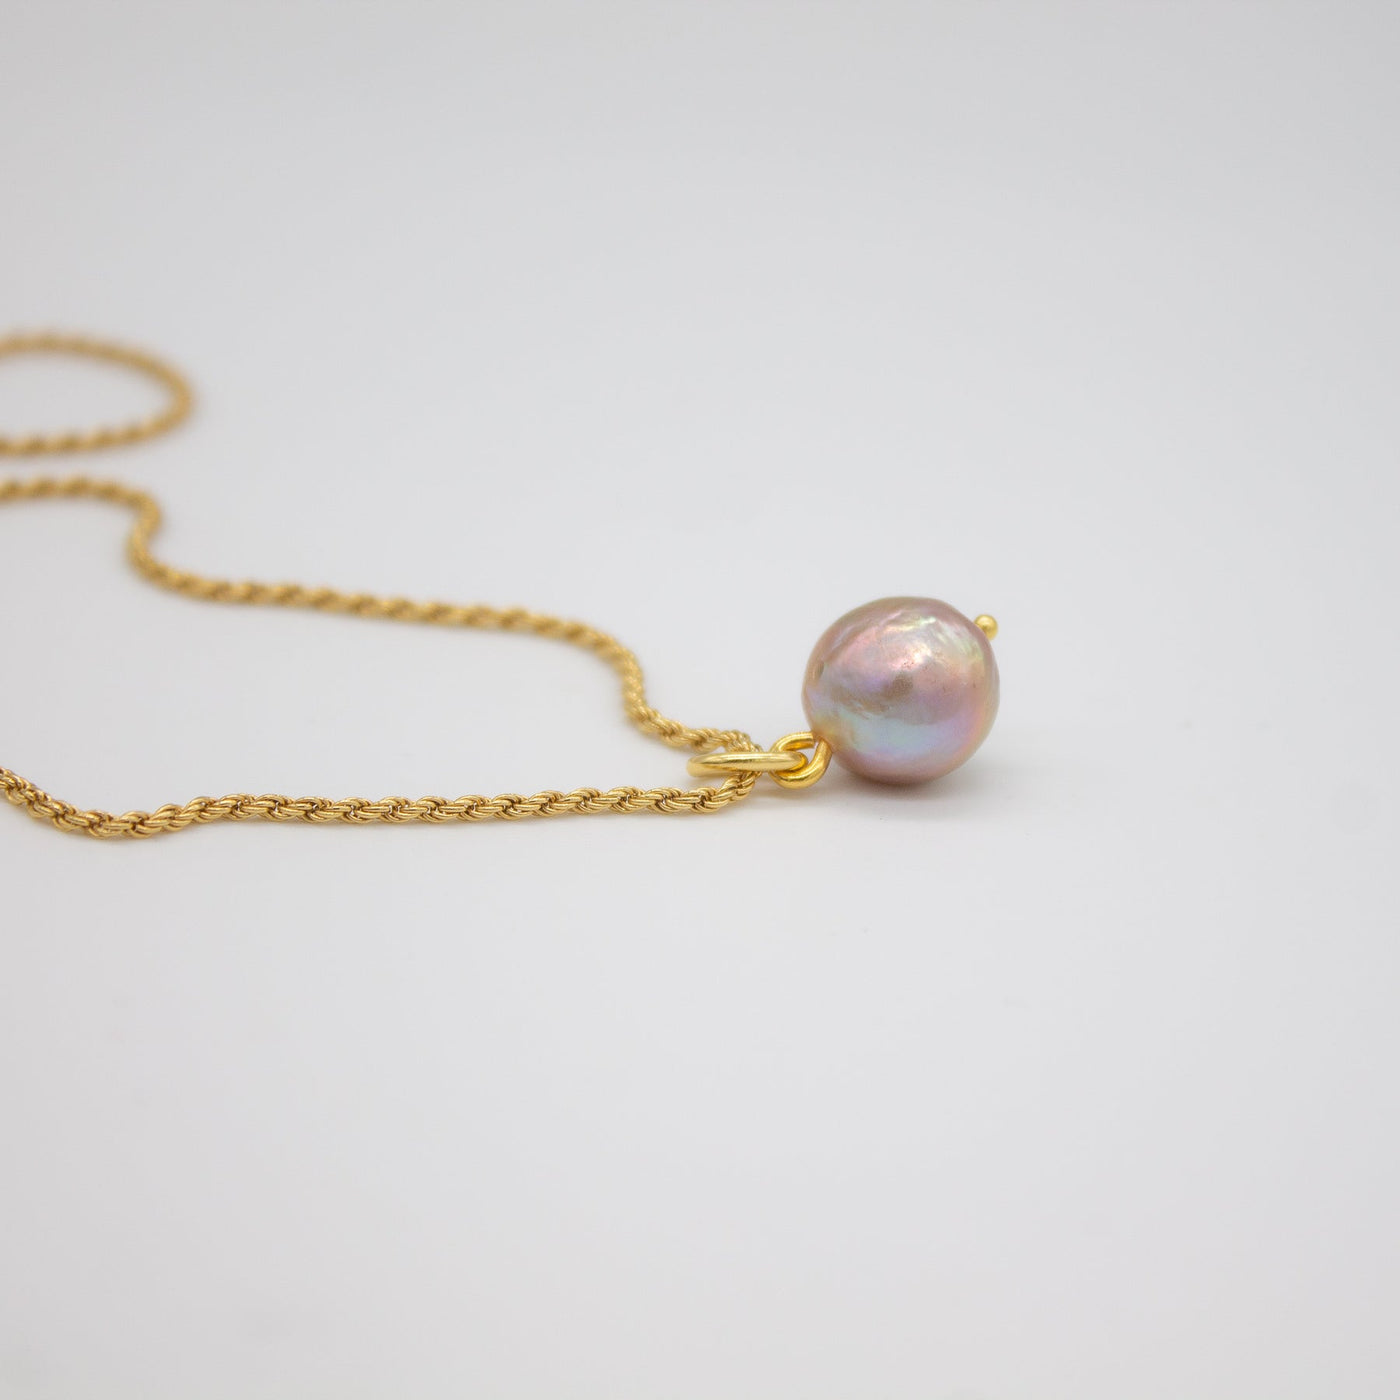 Jewelry set // MILBAKKEN earrings x SVELVIK necklace gold plated